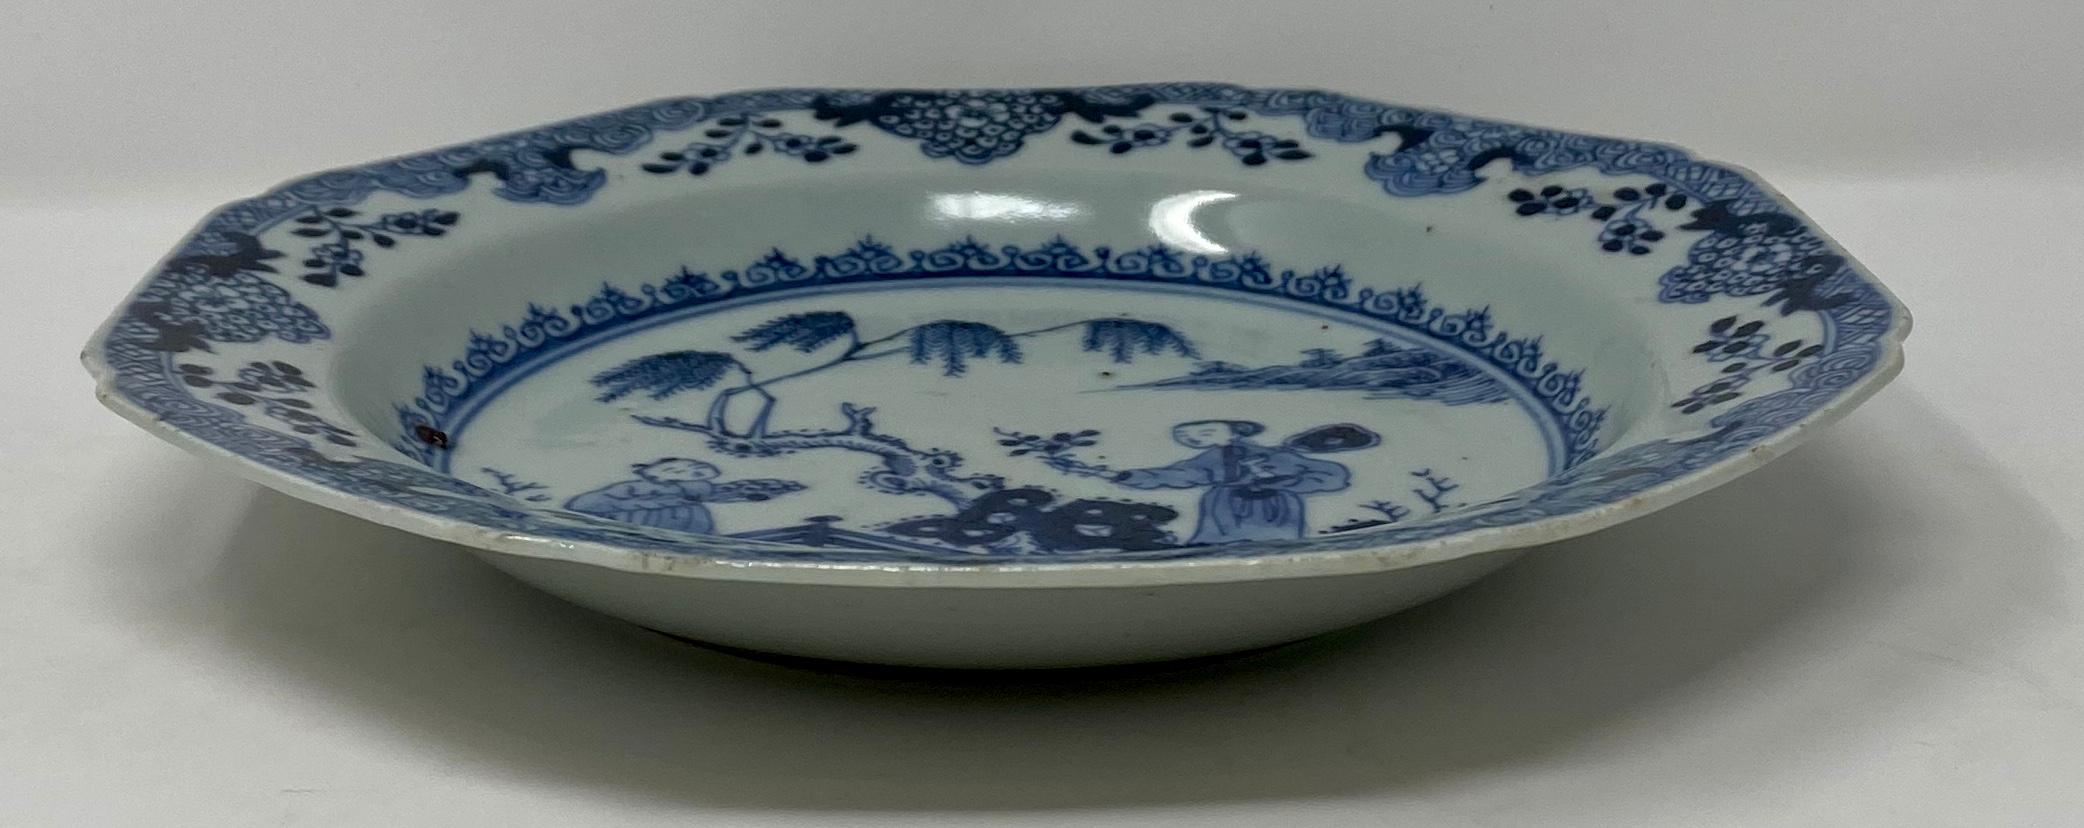 Antiker chinesischer Teller aus dem 18. Jahrhundert.
